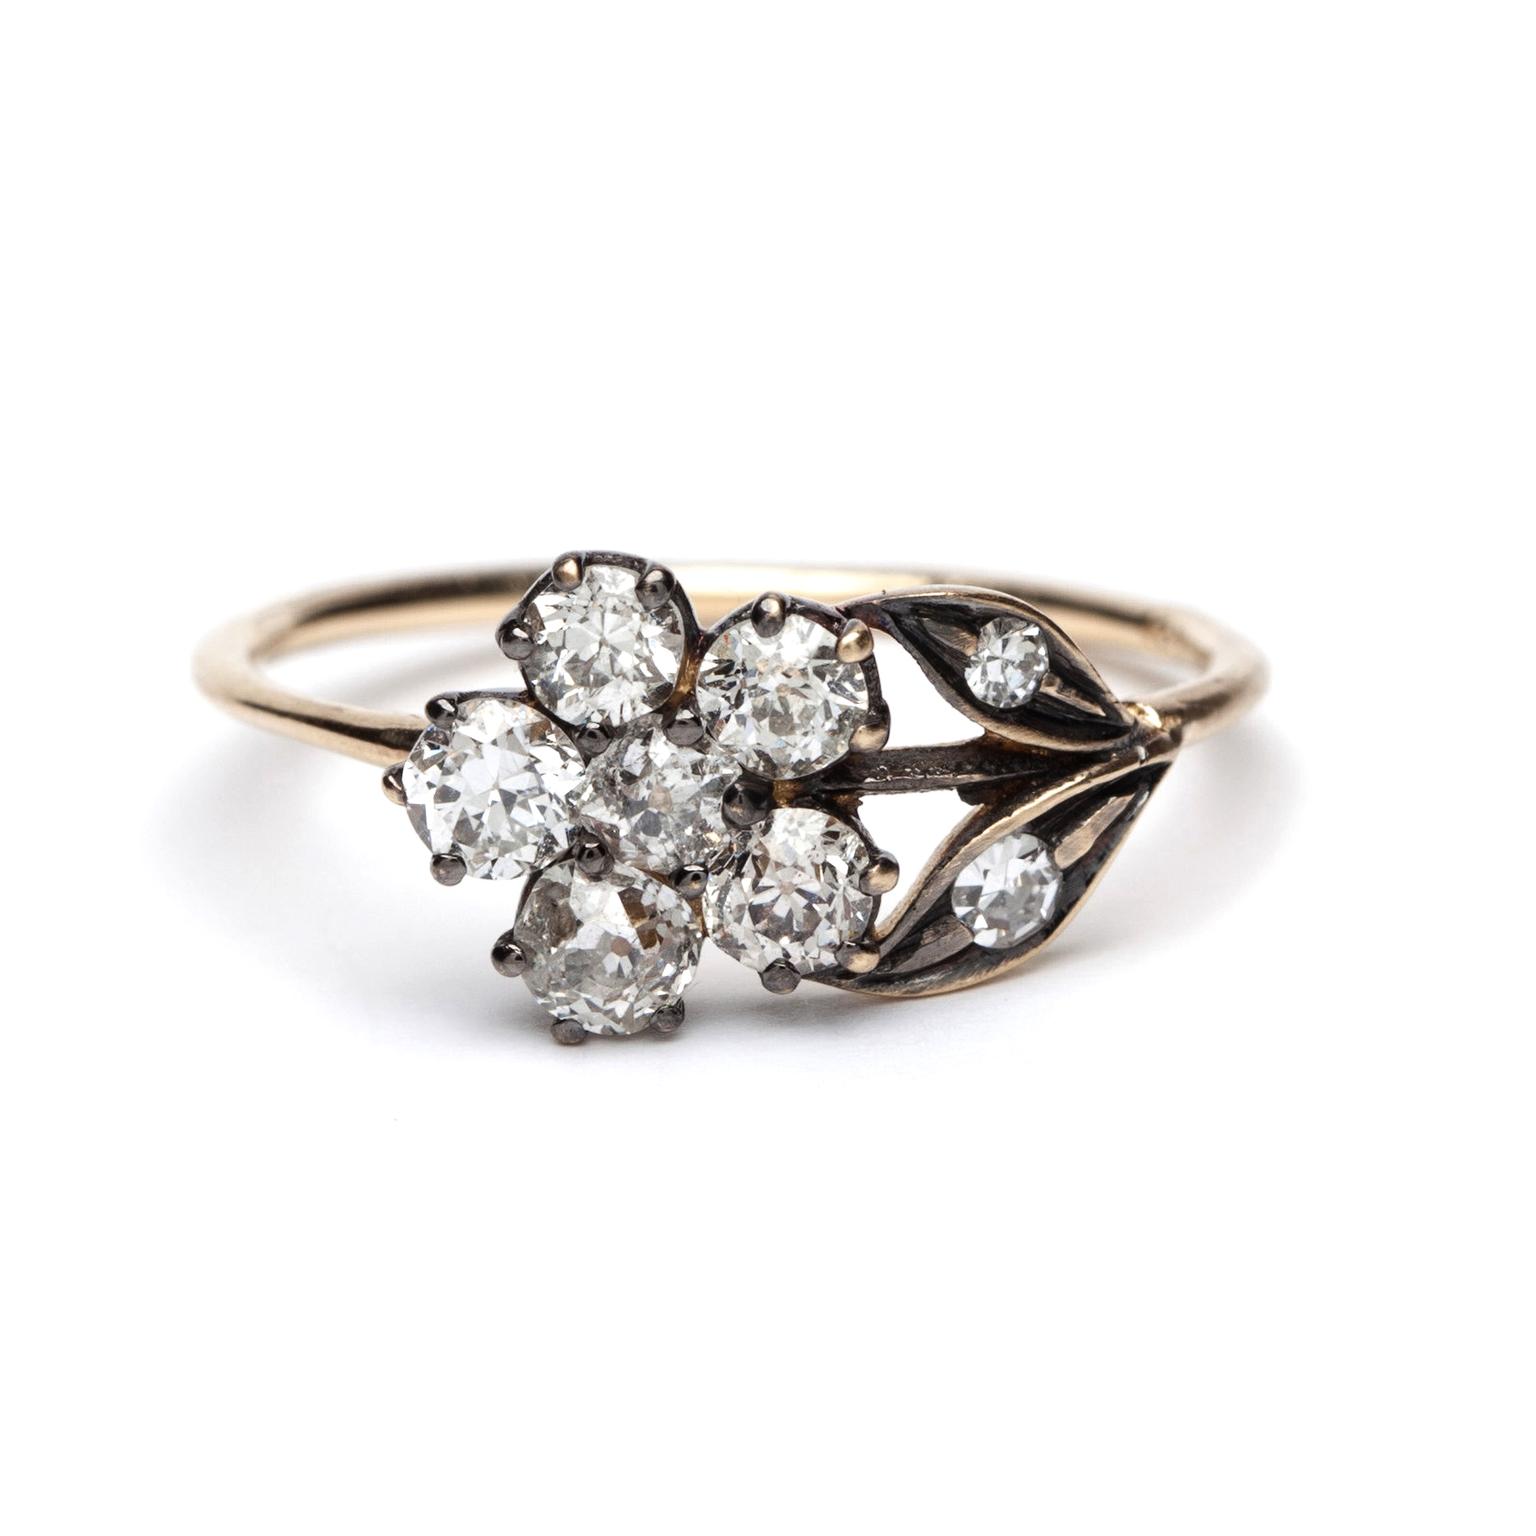 Sofia Kaman vintage-style engagement ring